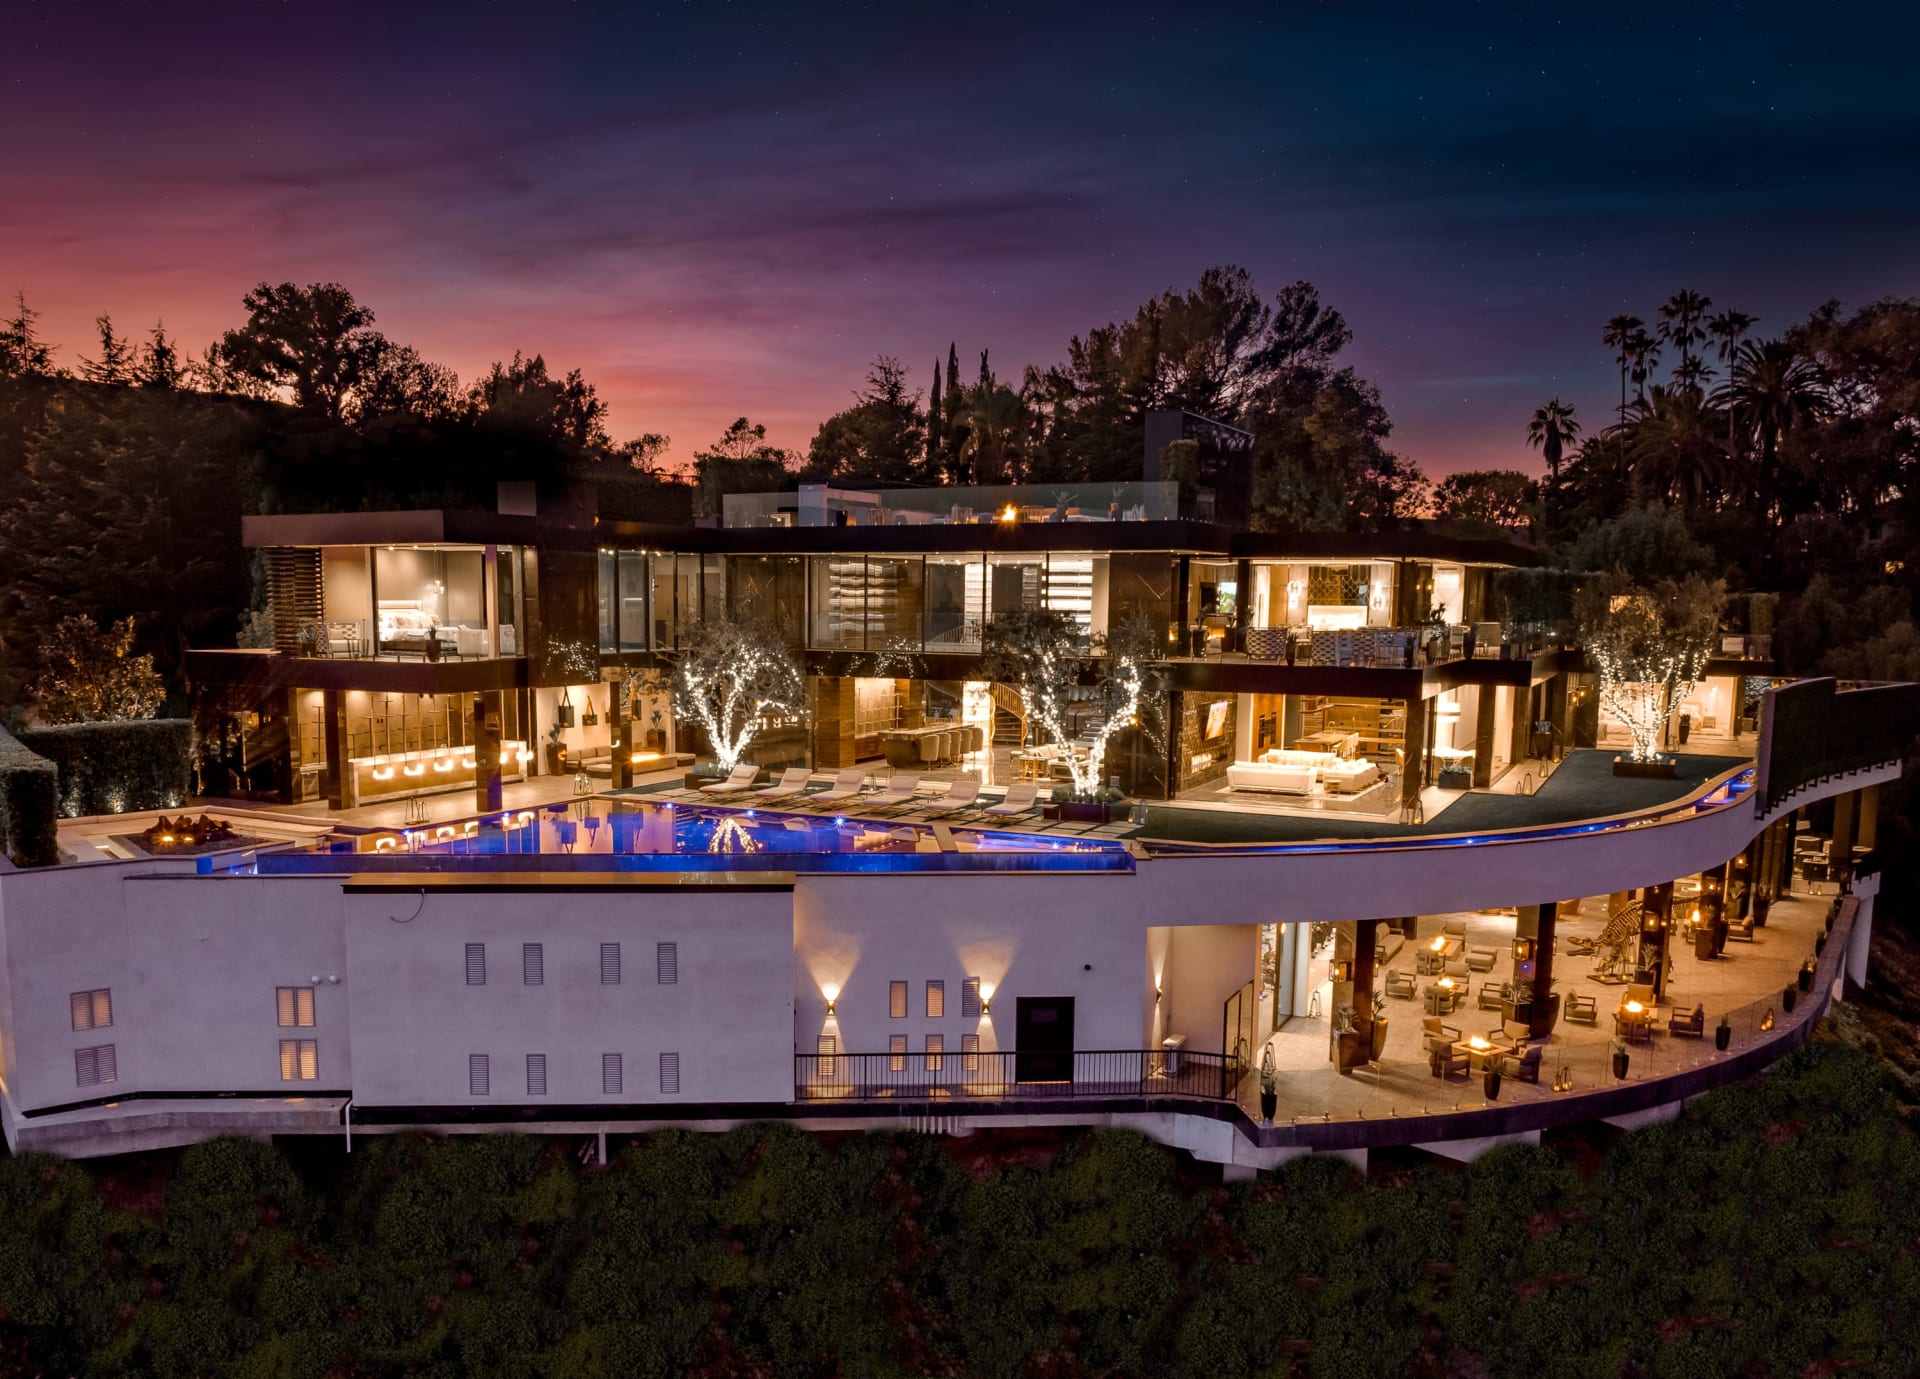 Localizada em Los Angeles, a mansão custa quase R$ 700 milhões